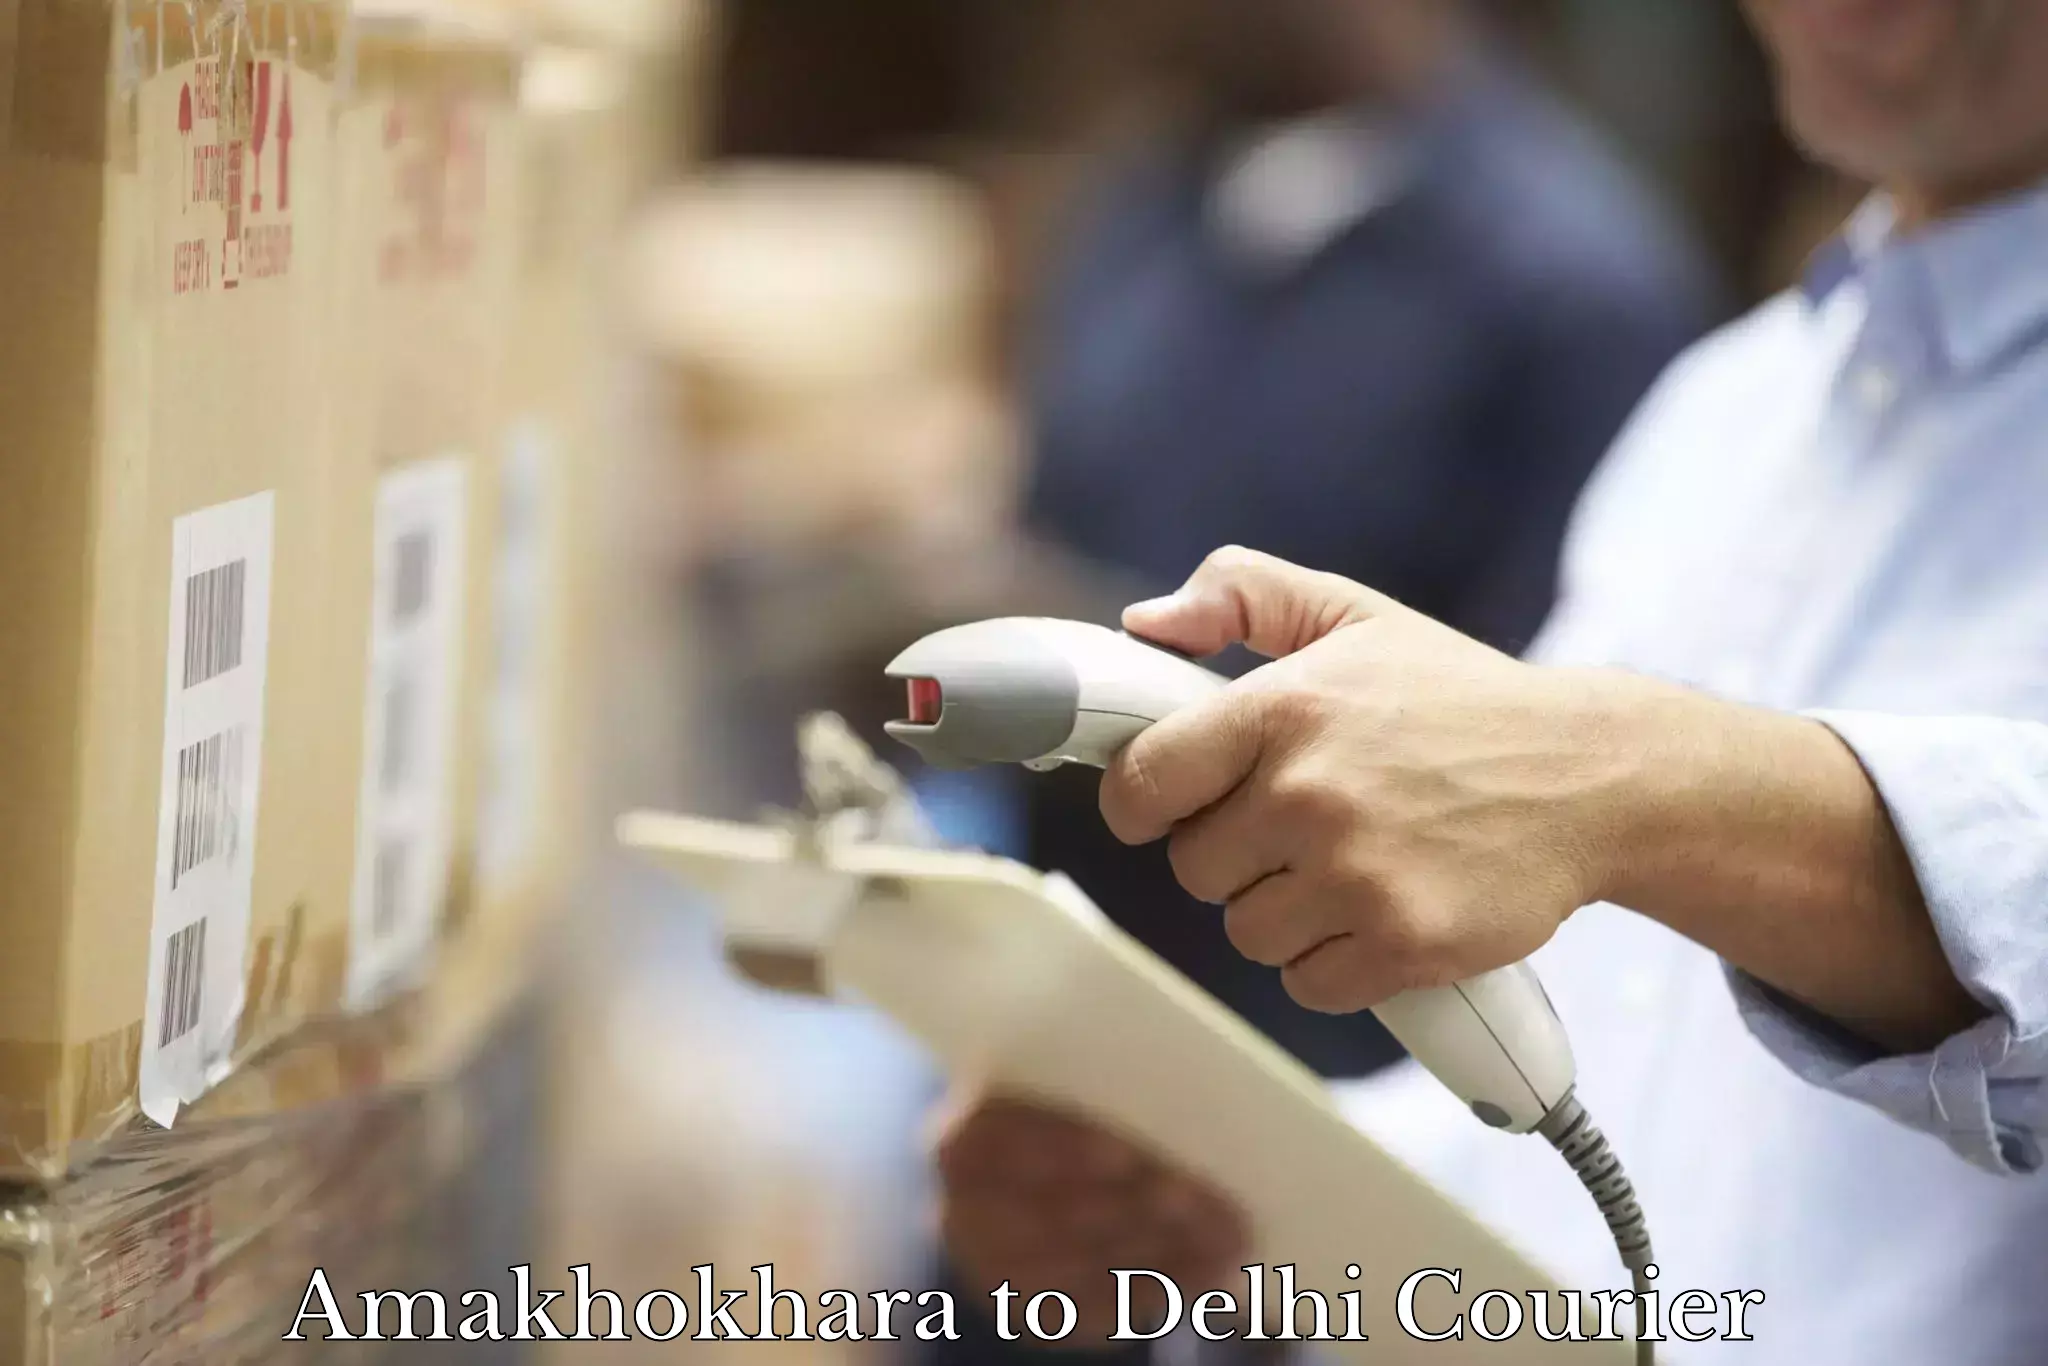 Optimized shipping routes Amakhokhara to IIT Delhi